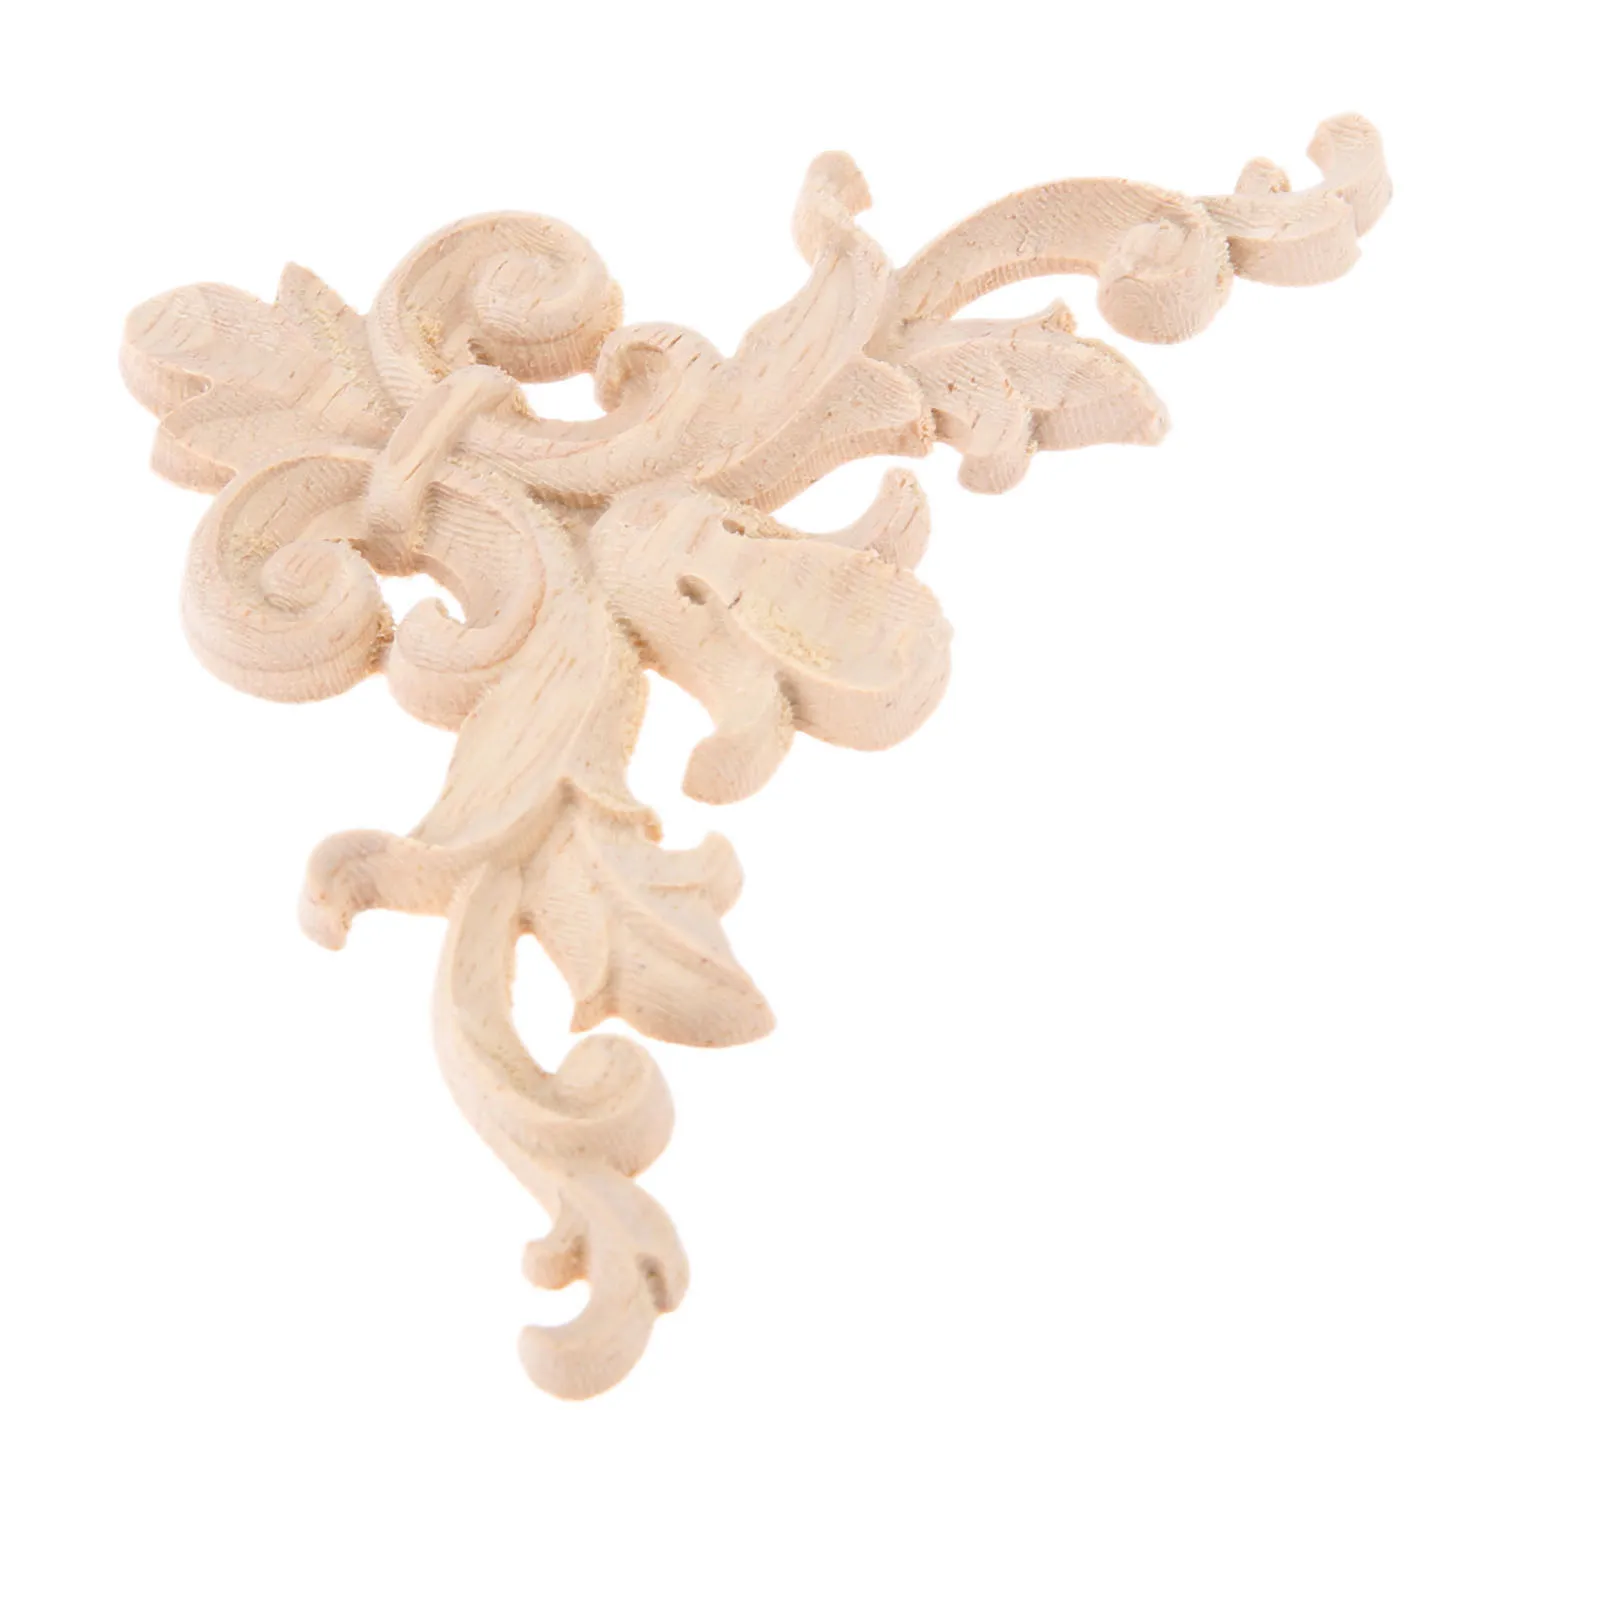 Flower Figurine Wooden Atures Wood Oak Carved Corner Onlay Applique Furniture 